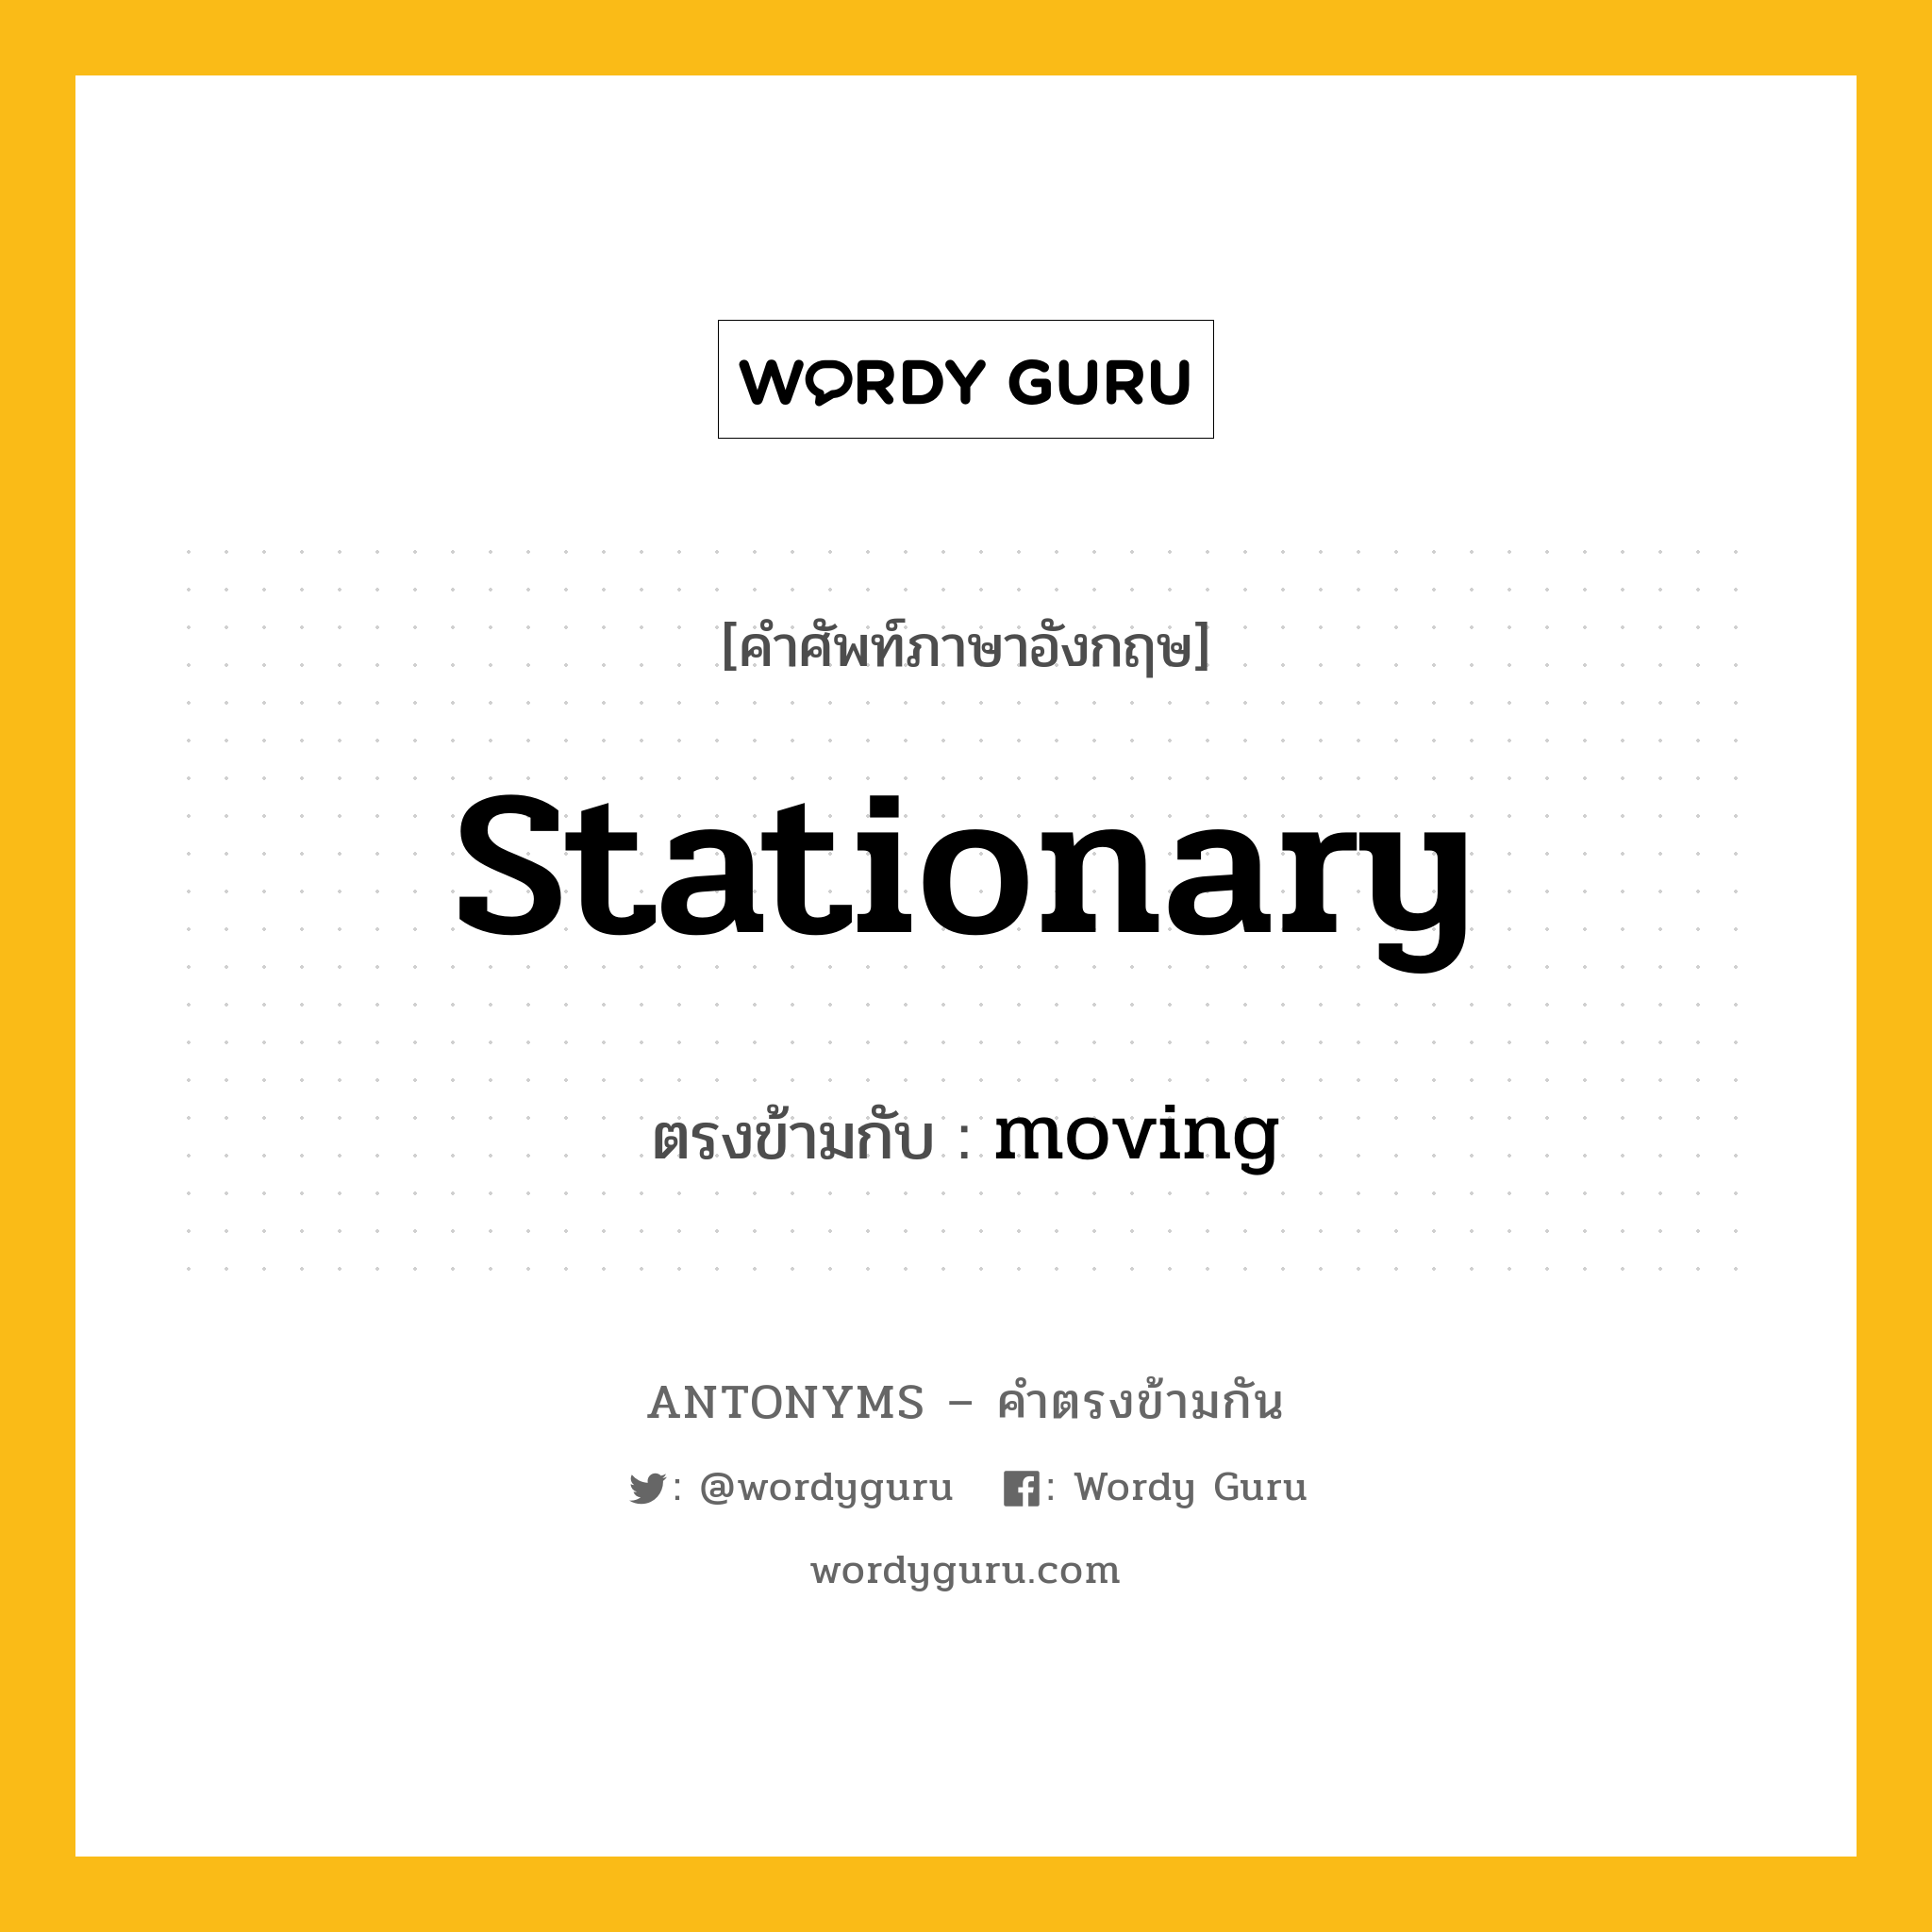 stationary เป็นคำตรงข้ามกับคำไหนบ้าง?, คำศัพท์ภาษาอังกฤษ stationary ตรงข้ามกับ moving หมวด moving